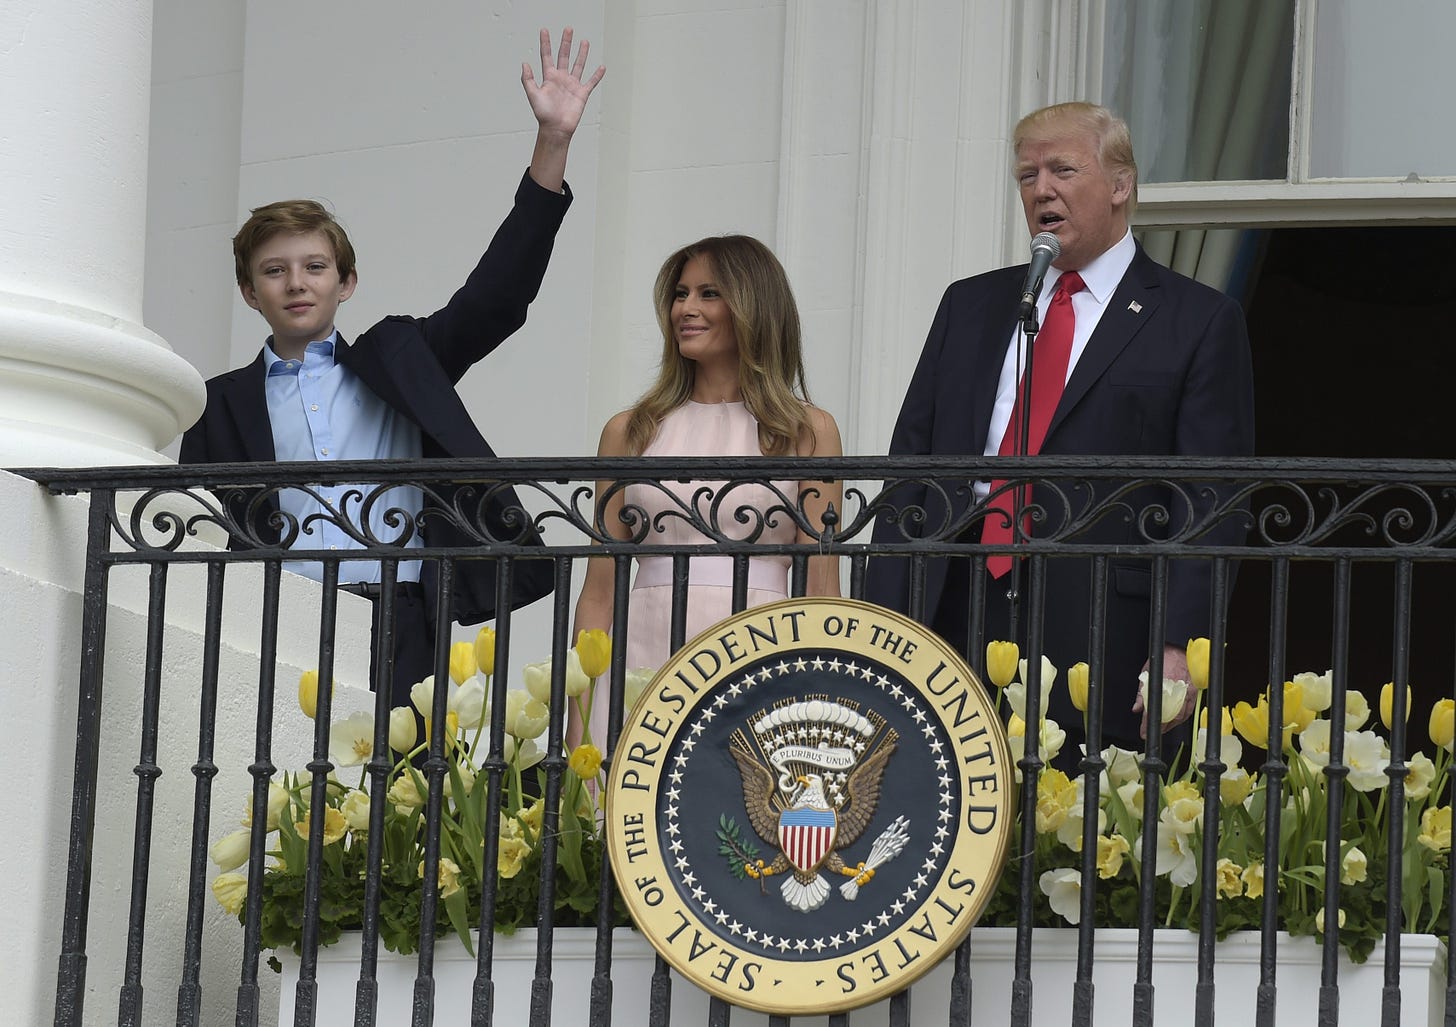 White House celebrates birthday as Barron Trump turns 12